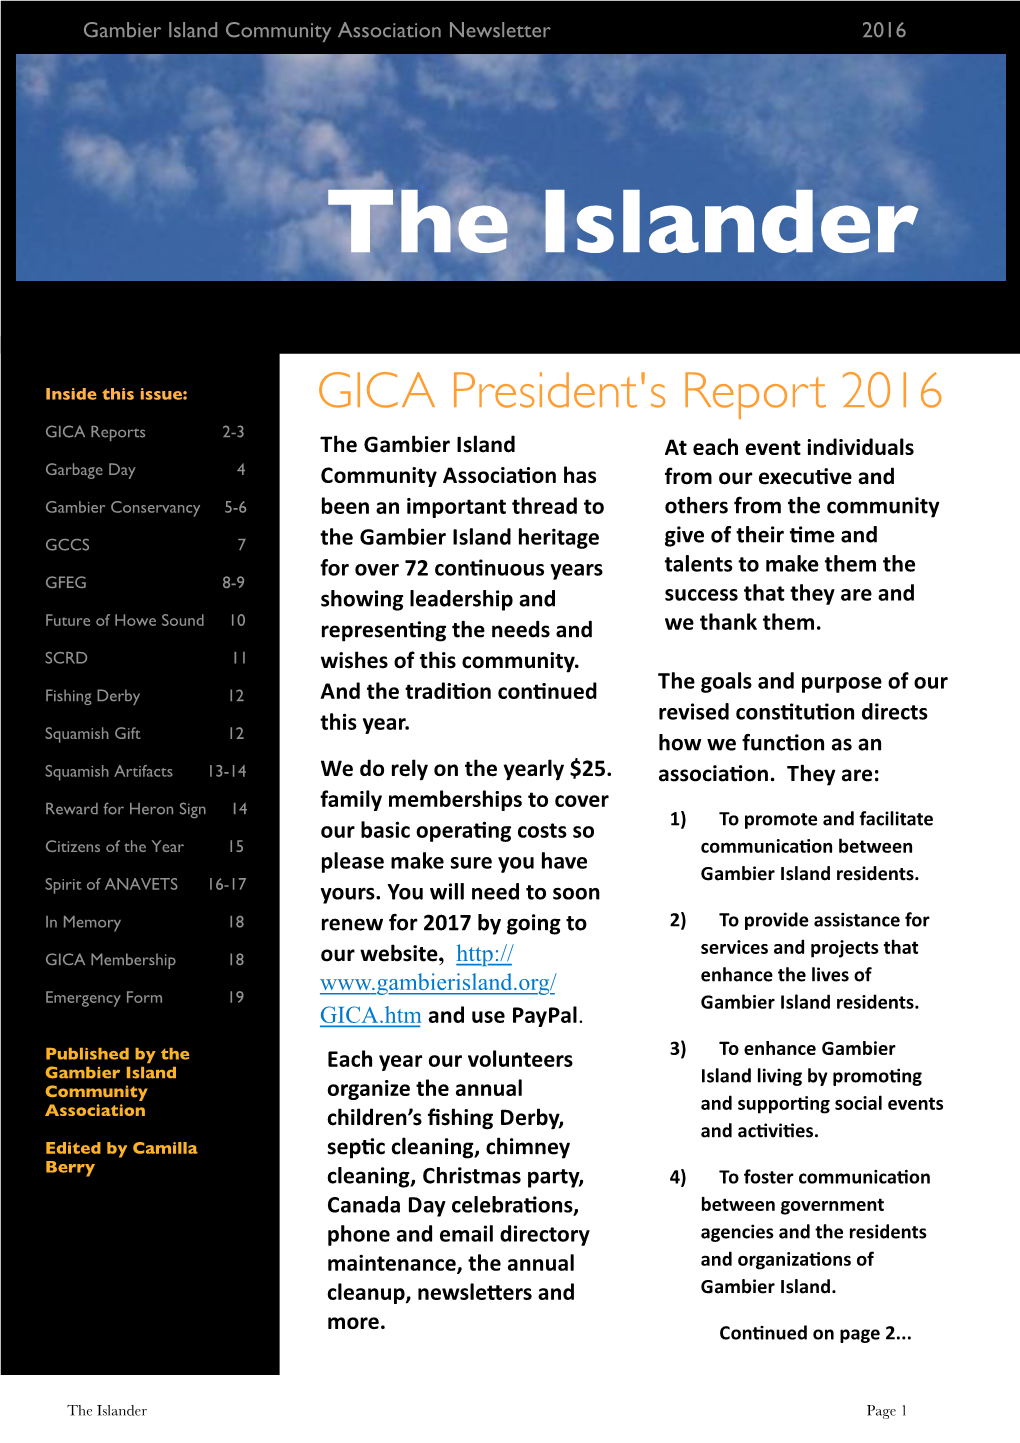 GICA President's Report 2016